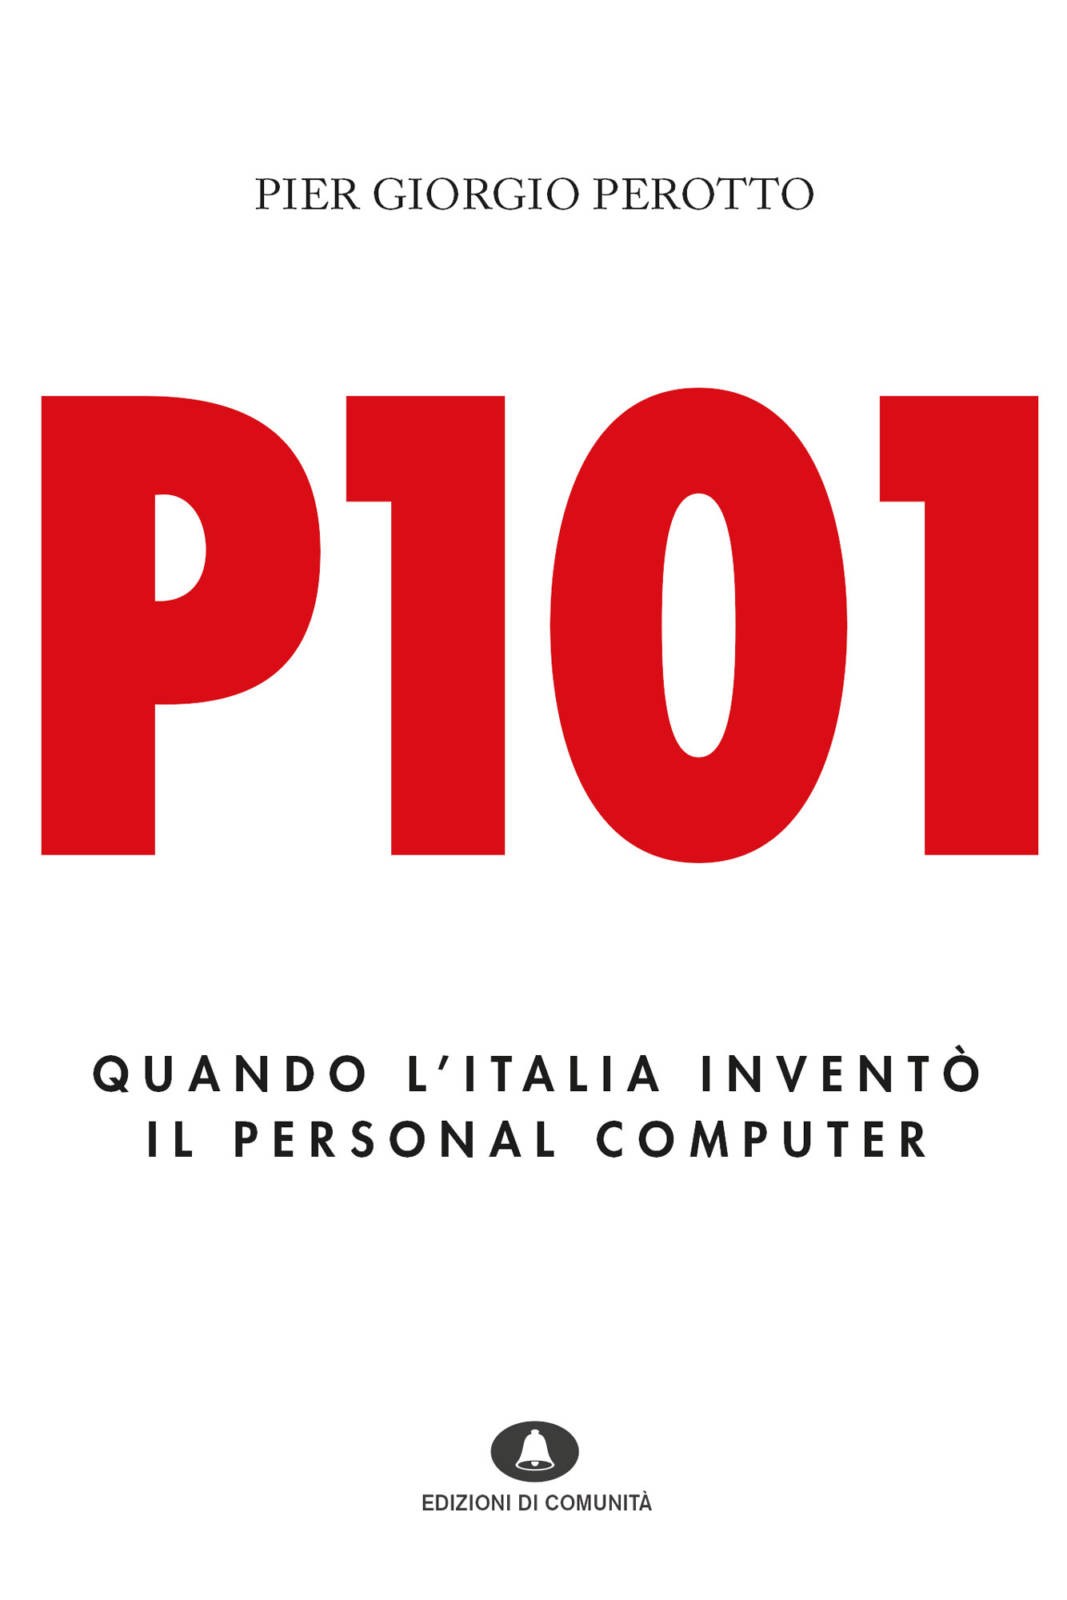 P101 – Pier Giorgio Perotto